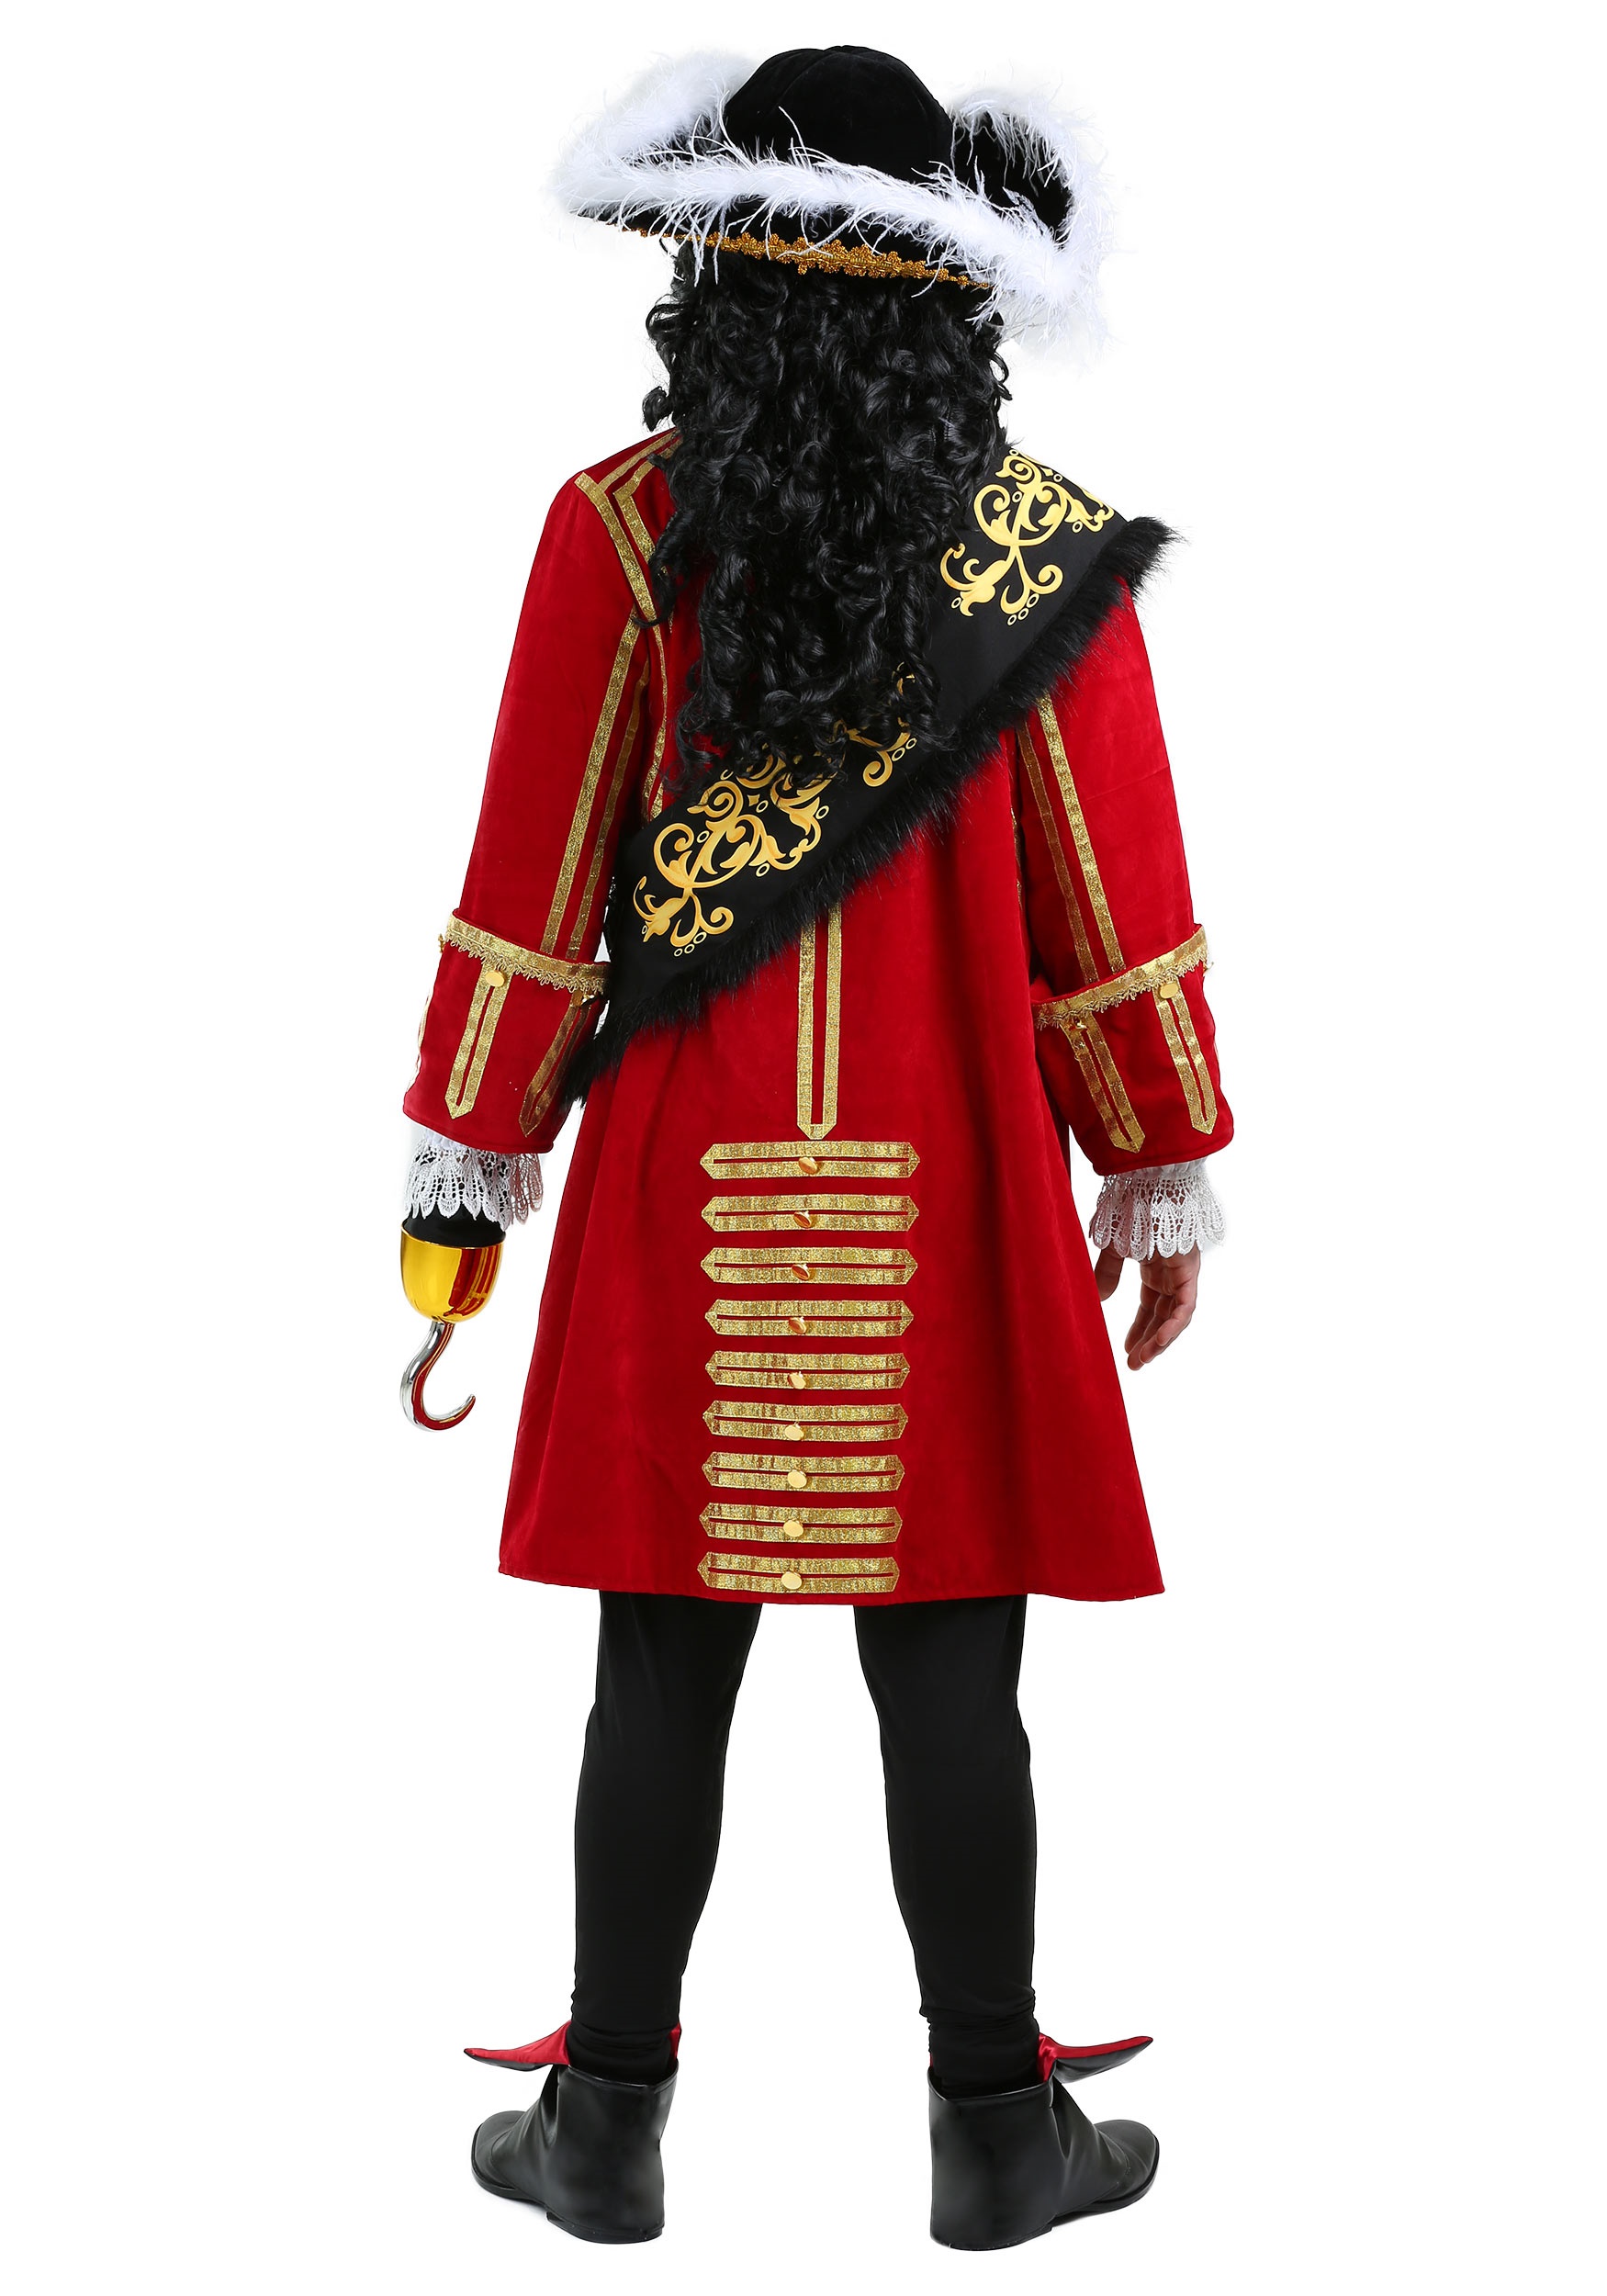 Elite Captain Hook Costume for Men